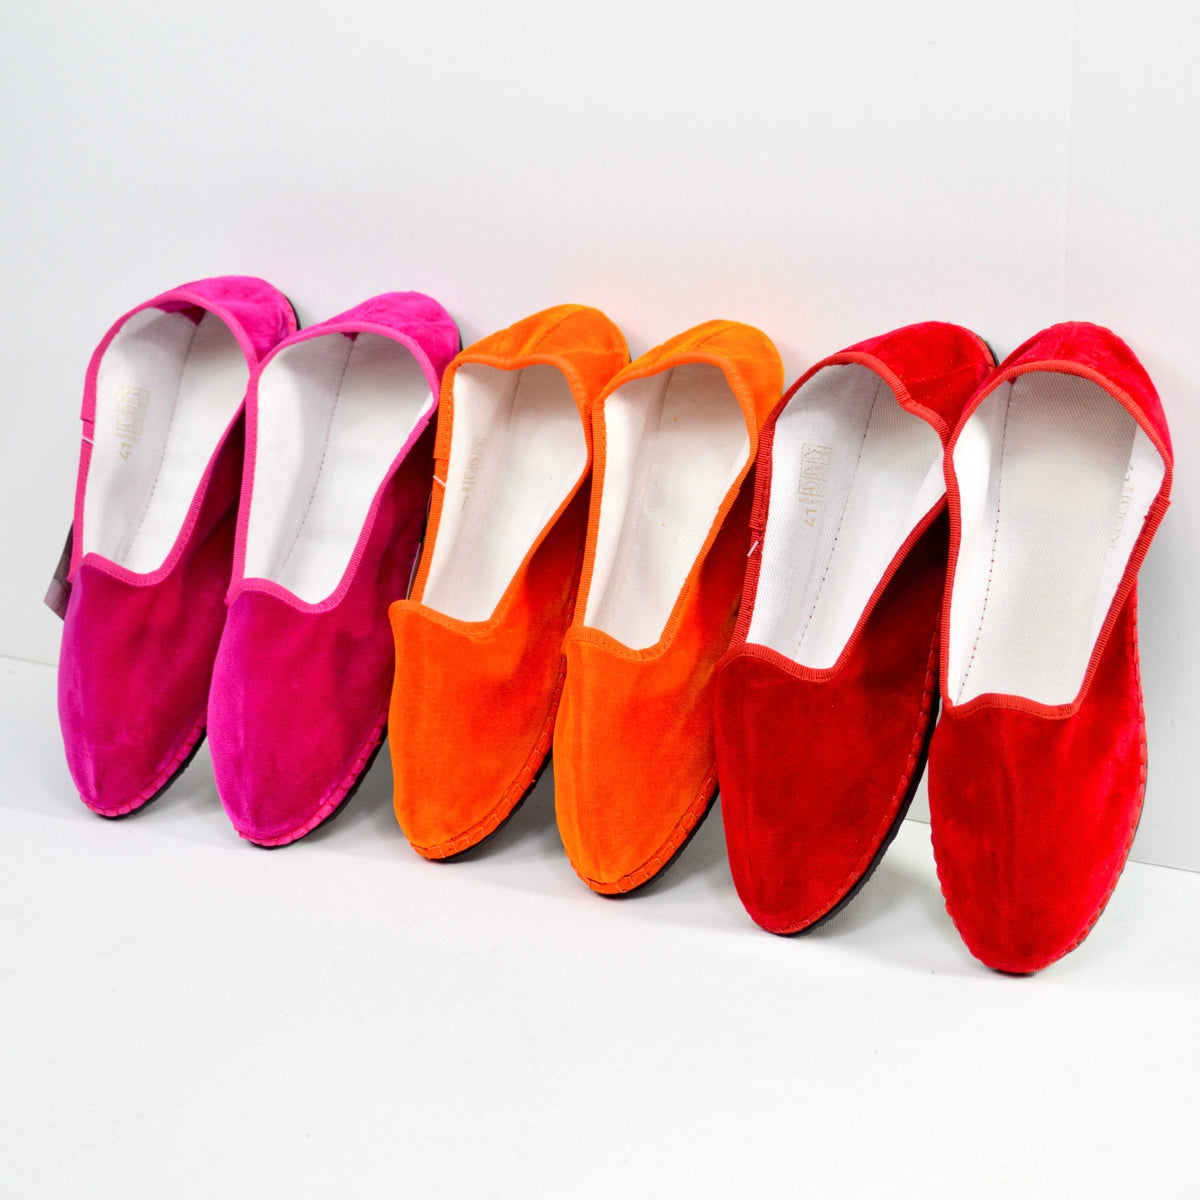 Friulane Slipper Shoes, Unisex, Comfortable Velvet Slippers - My Italian Decor